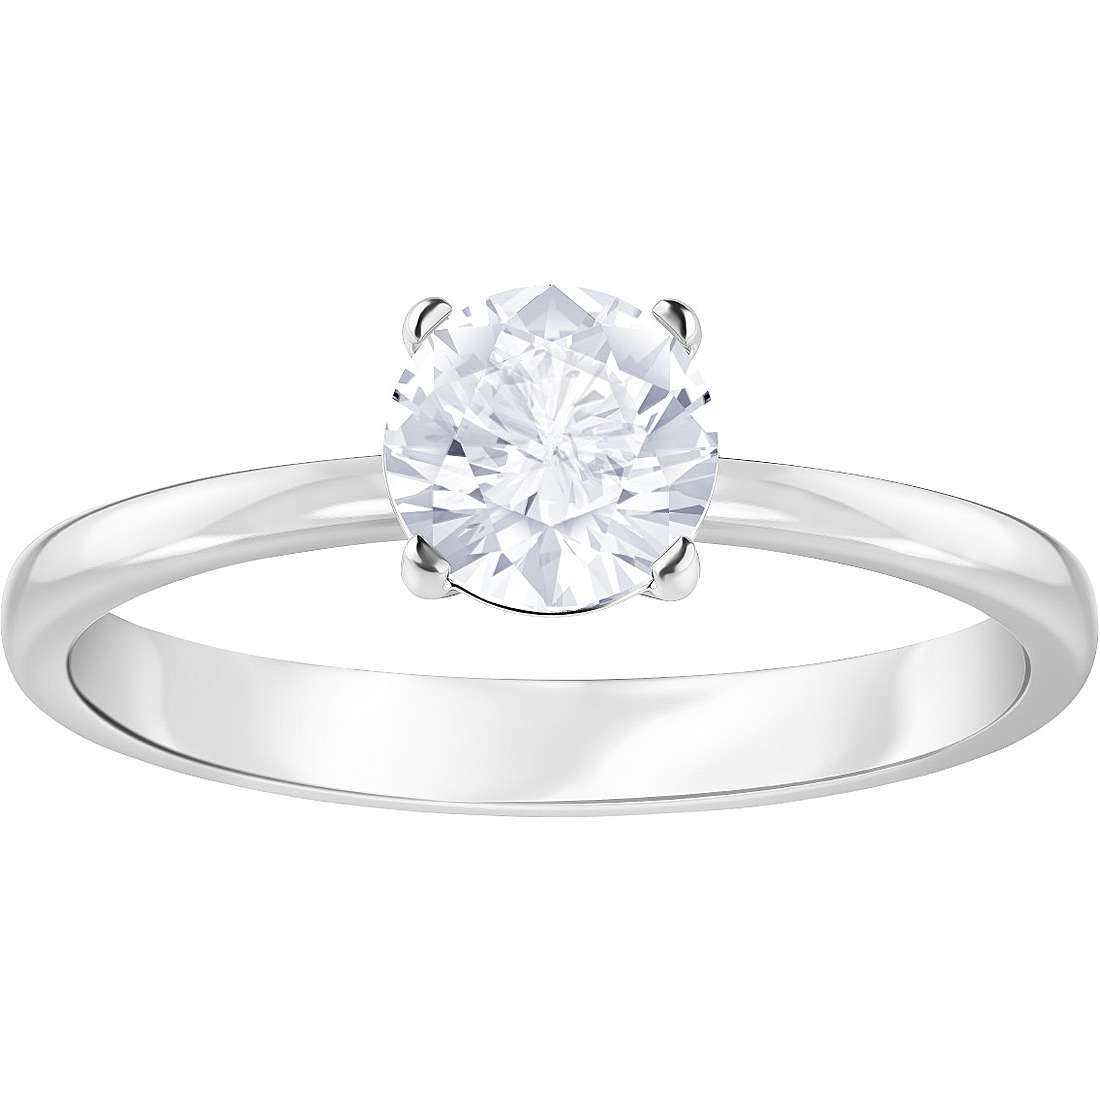 anello donna gioielli Swarovski Attract Round 5368542